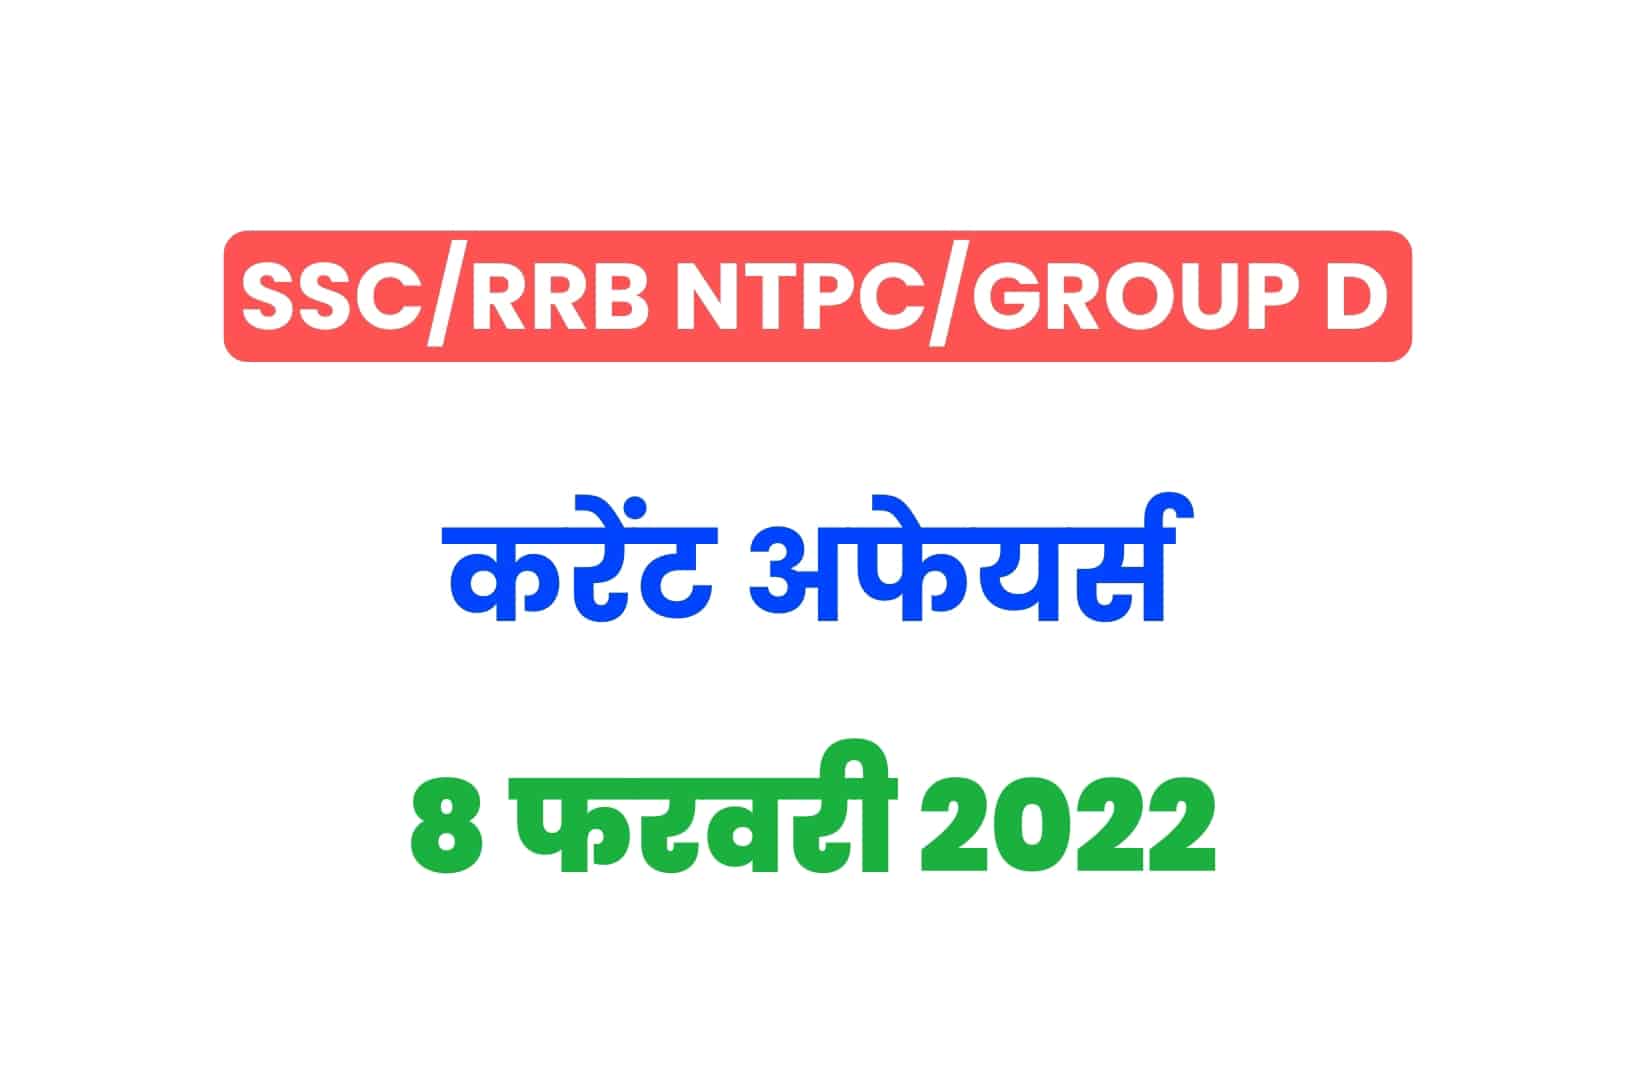 SSC/RRB Group D/NTPC Exam 2022: 8 फरवरी के 15 महत्वपूर्ण करेंट अफेयर्स के प्रश्न, जरूर पढ़ें